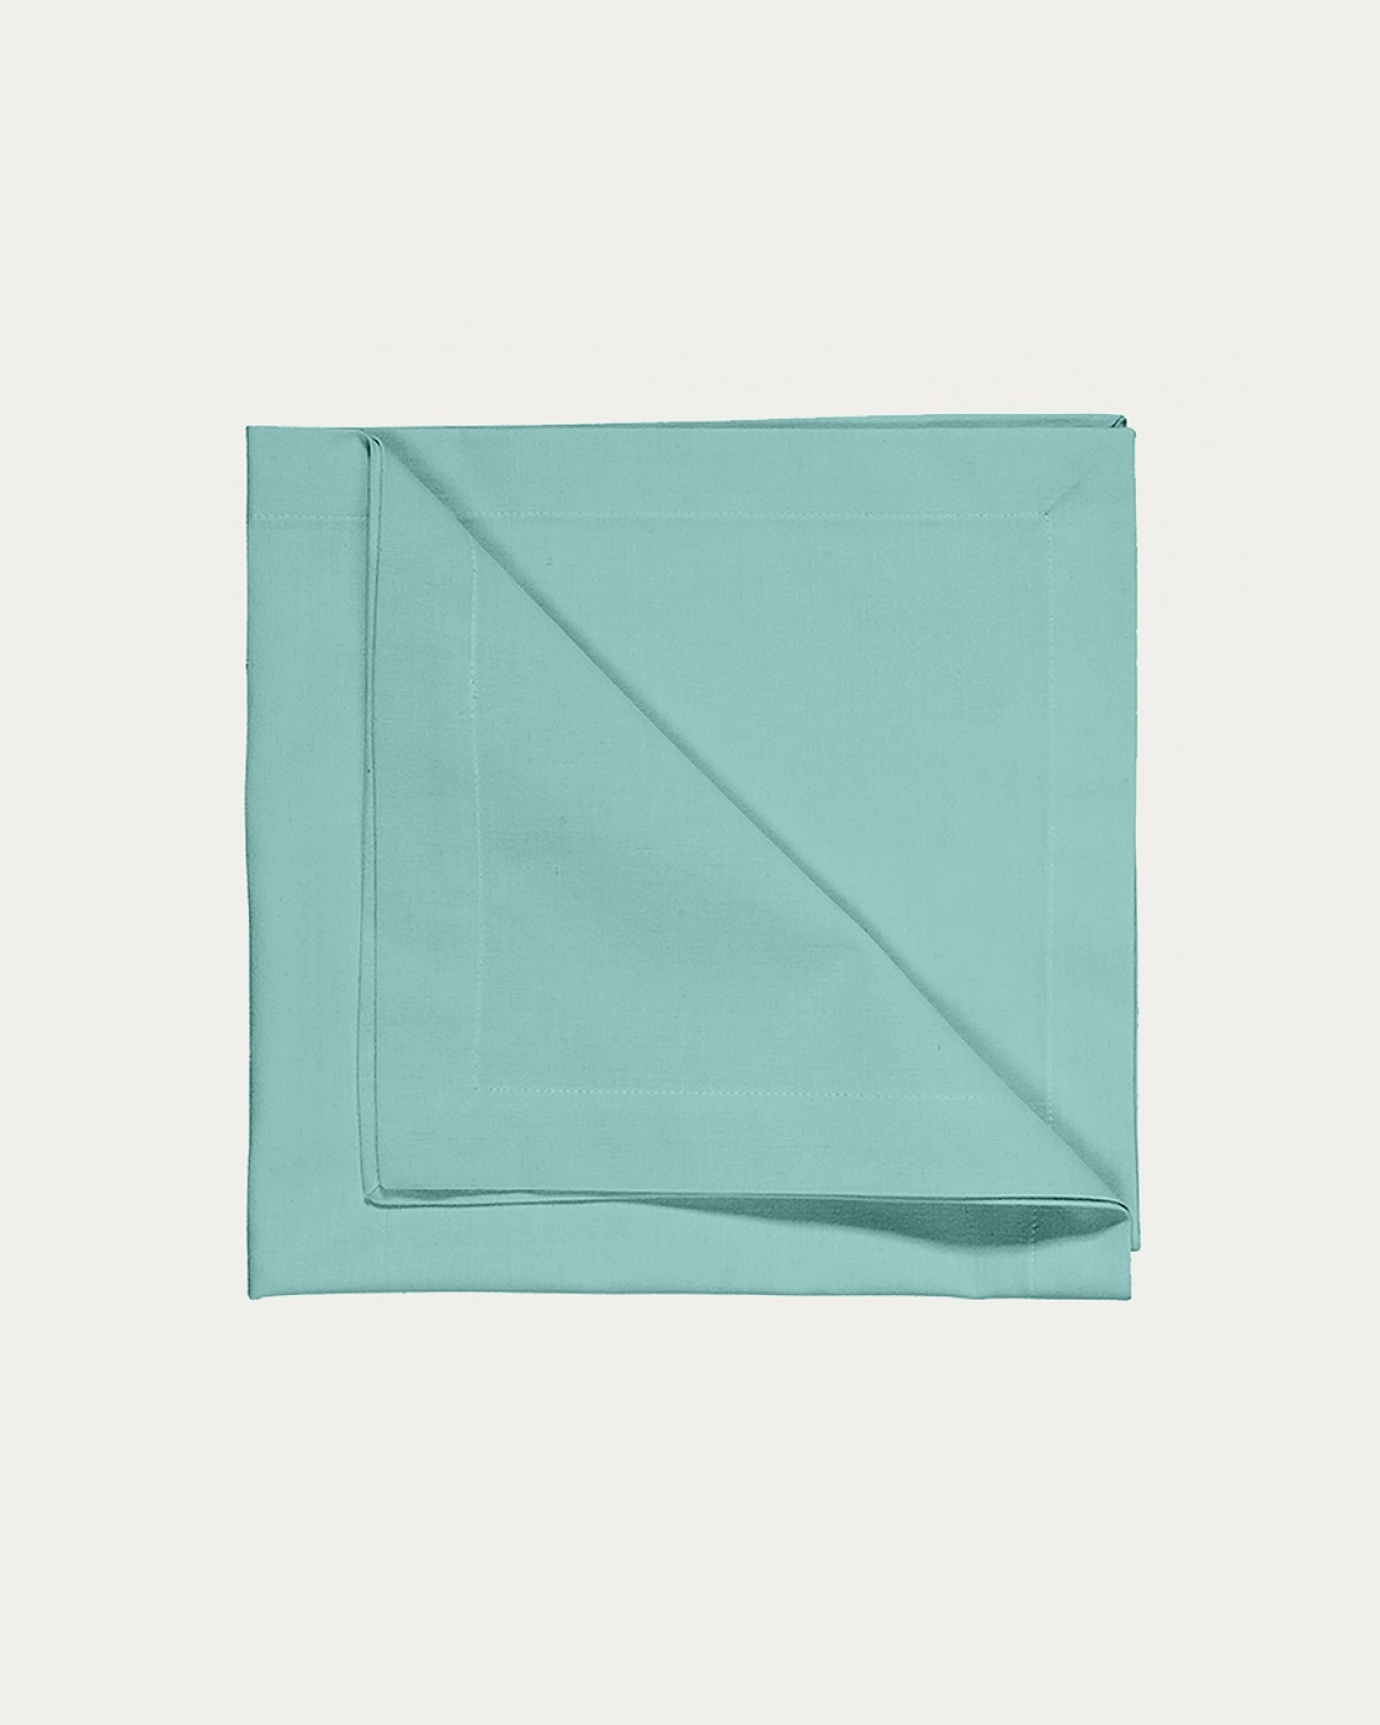 Image du produit serviette de table ROBERT celadon en coton doux de LINUM DESIGN. Taille 45 x 45 cm et vendu en lot de 4.